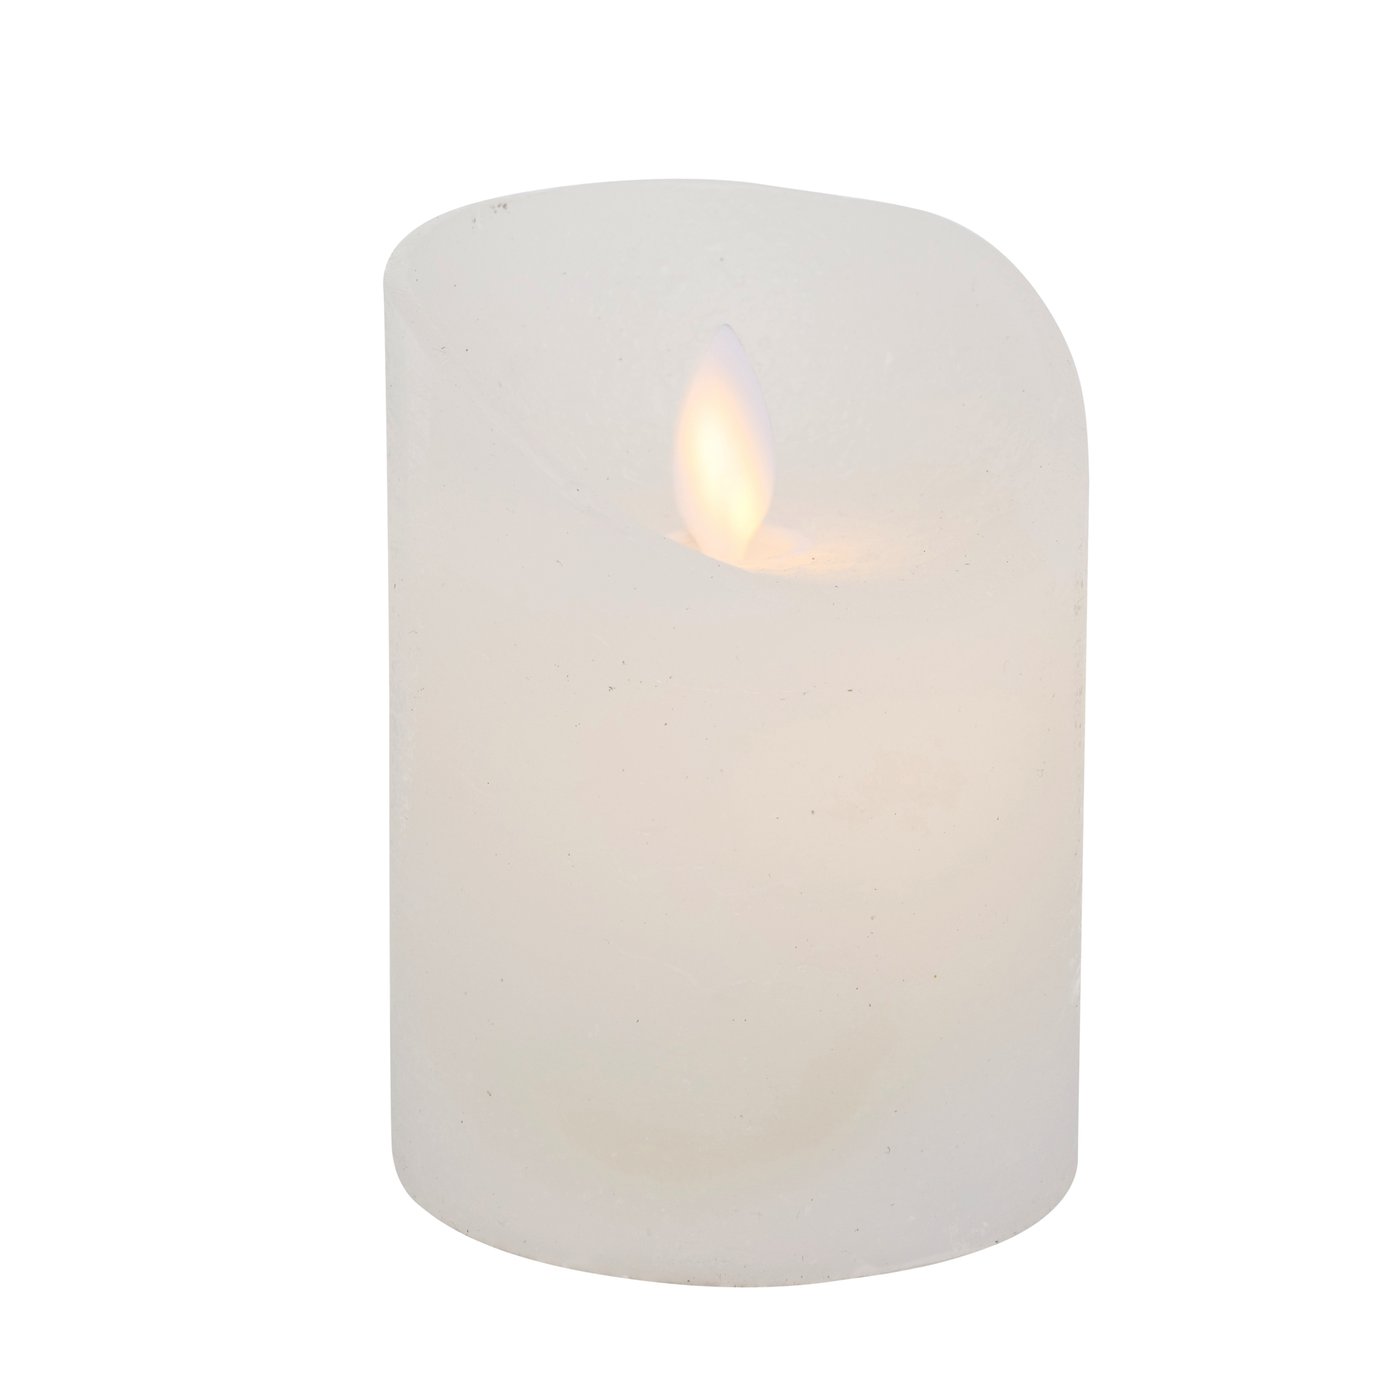 LED Echt Wachs Kerze weiß mit Timer Höhe 10cm, Durchmesser 7,5cm, 2004104, 4020607780224